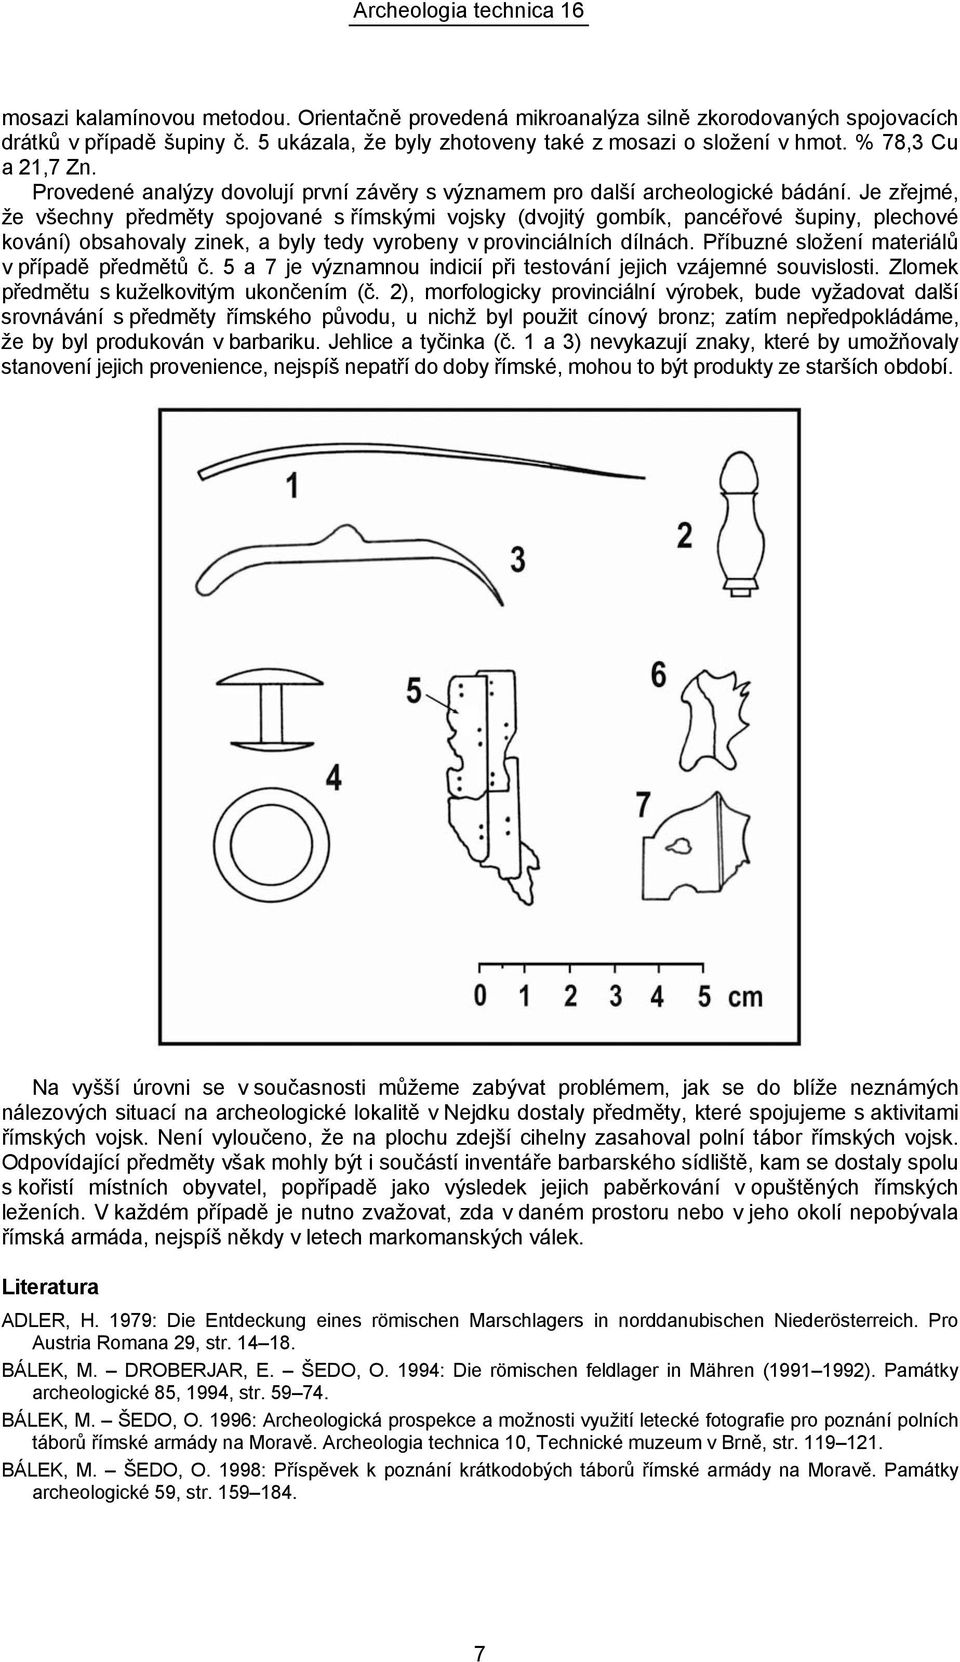 Je zřejmé, že všechny předměty spojované s římskými vojsky (dvojitý gombík, pancéřové šupiny, plechové kování) obsahovaly zinek, a byly tedy vyrobeny v provinciálních dílnách.